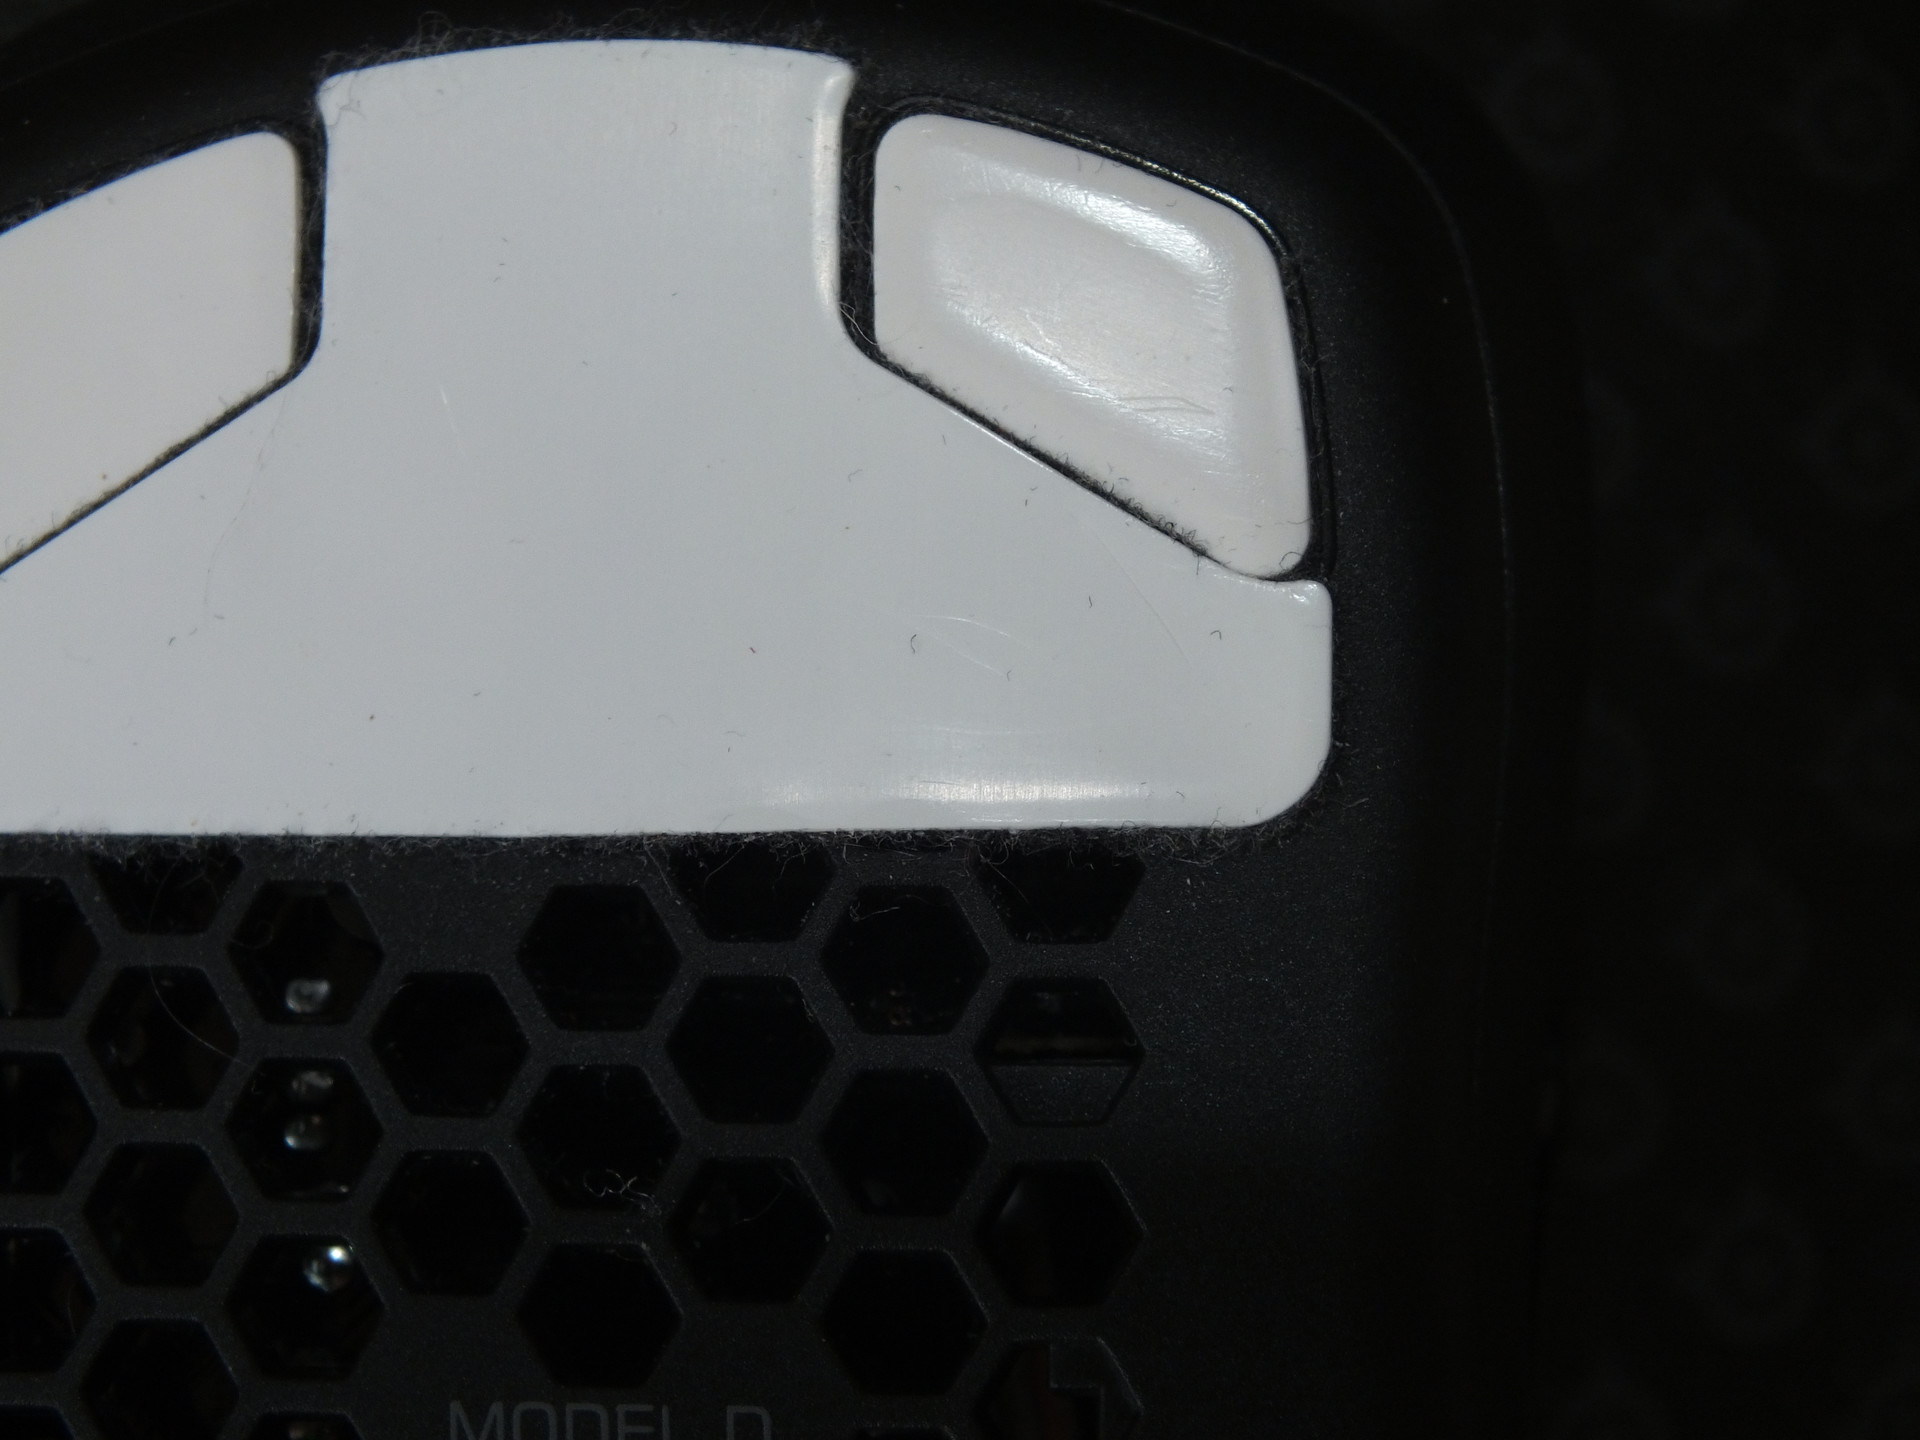 Nahaufnahme der oberen Mausgleiter der Model D. Anhand der Spiegelung ist die Form und erste Abnutzung erkennbar welche die Maus weicher gleiten lässt.